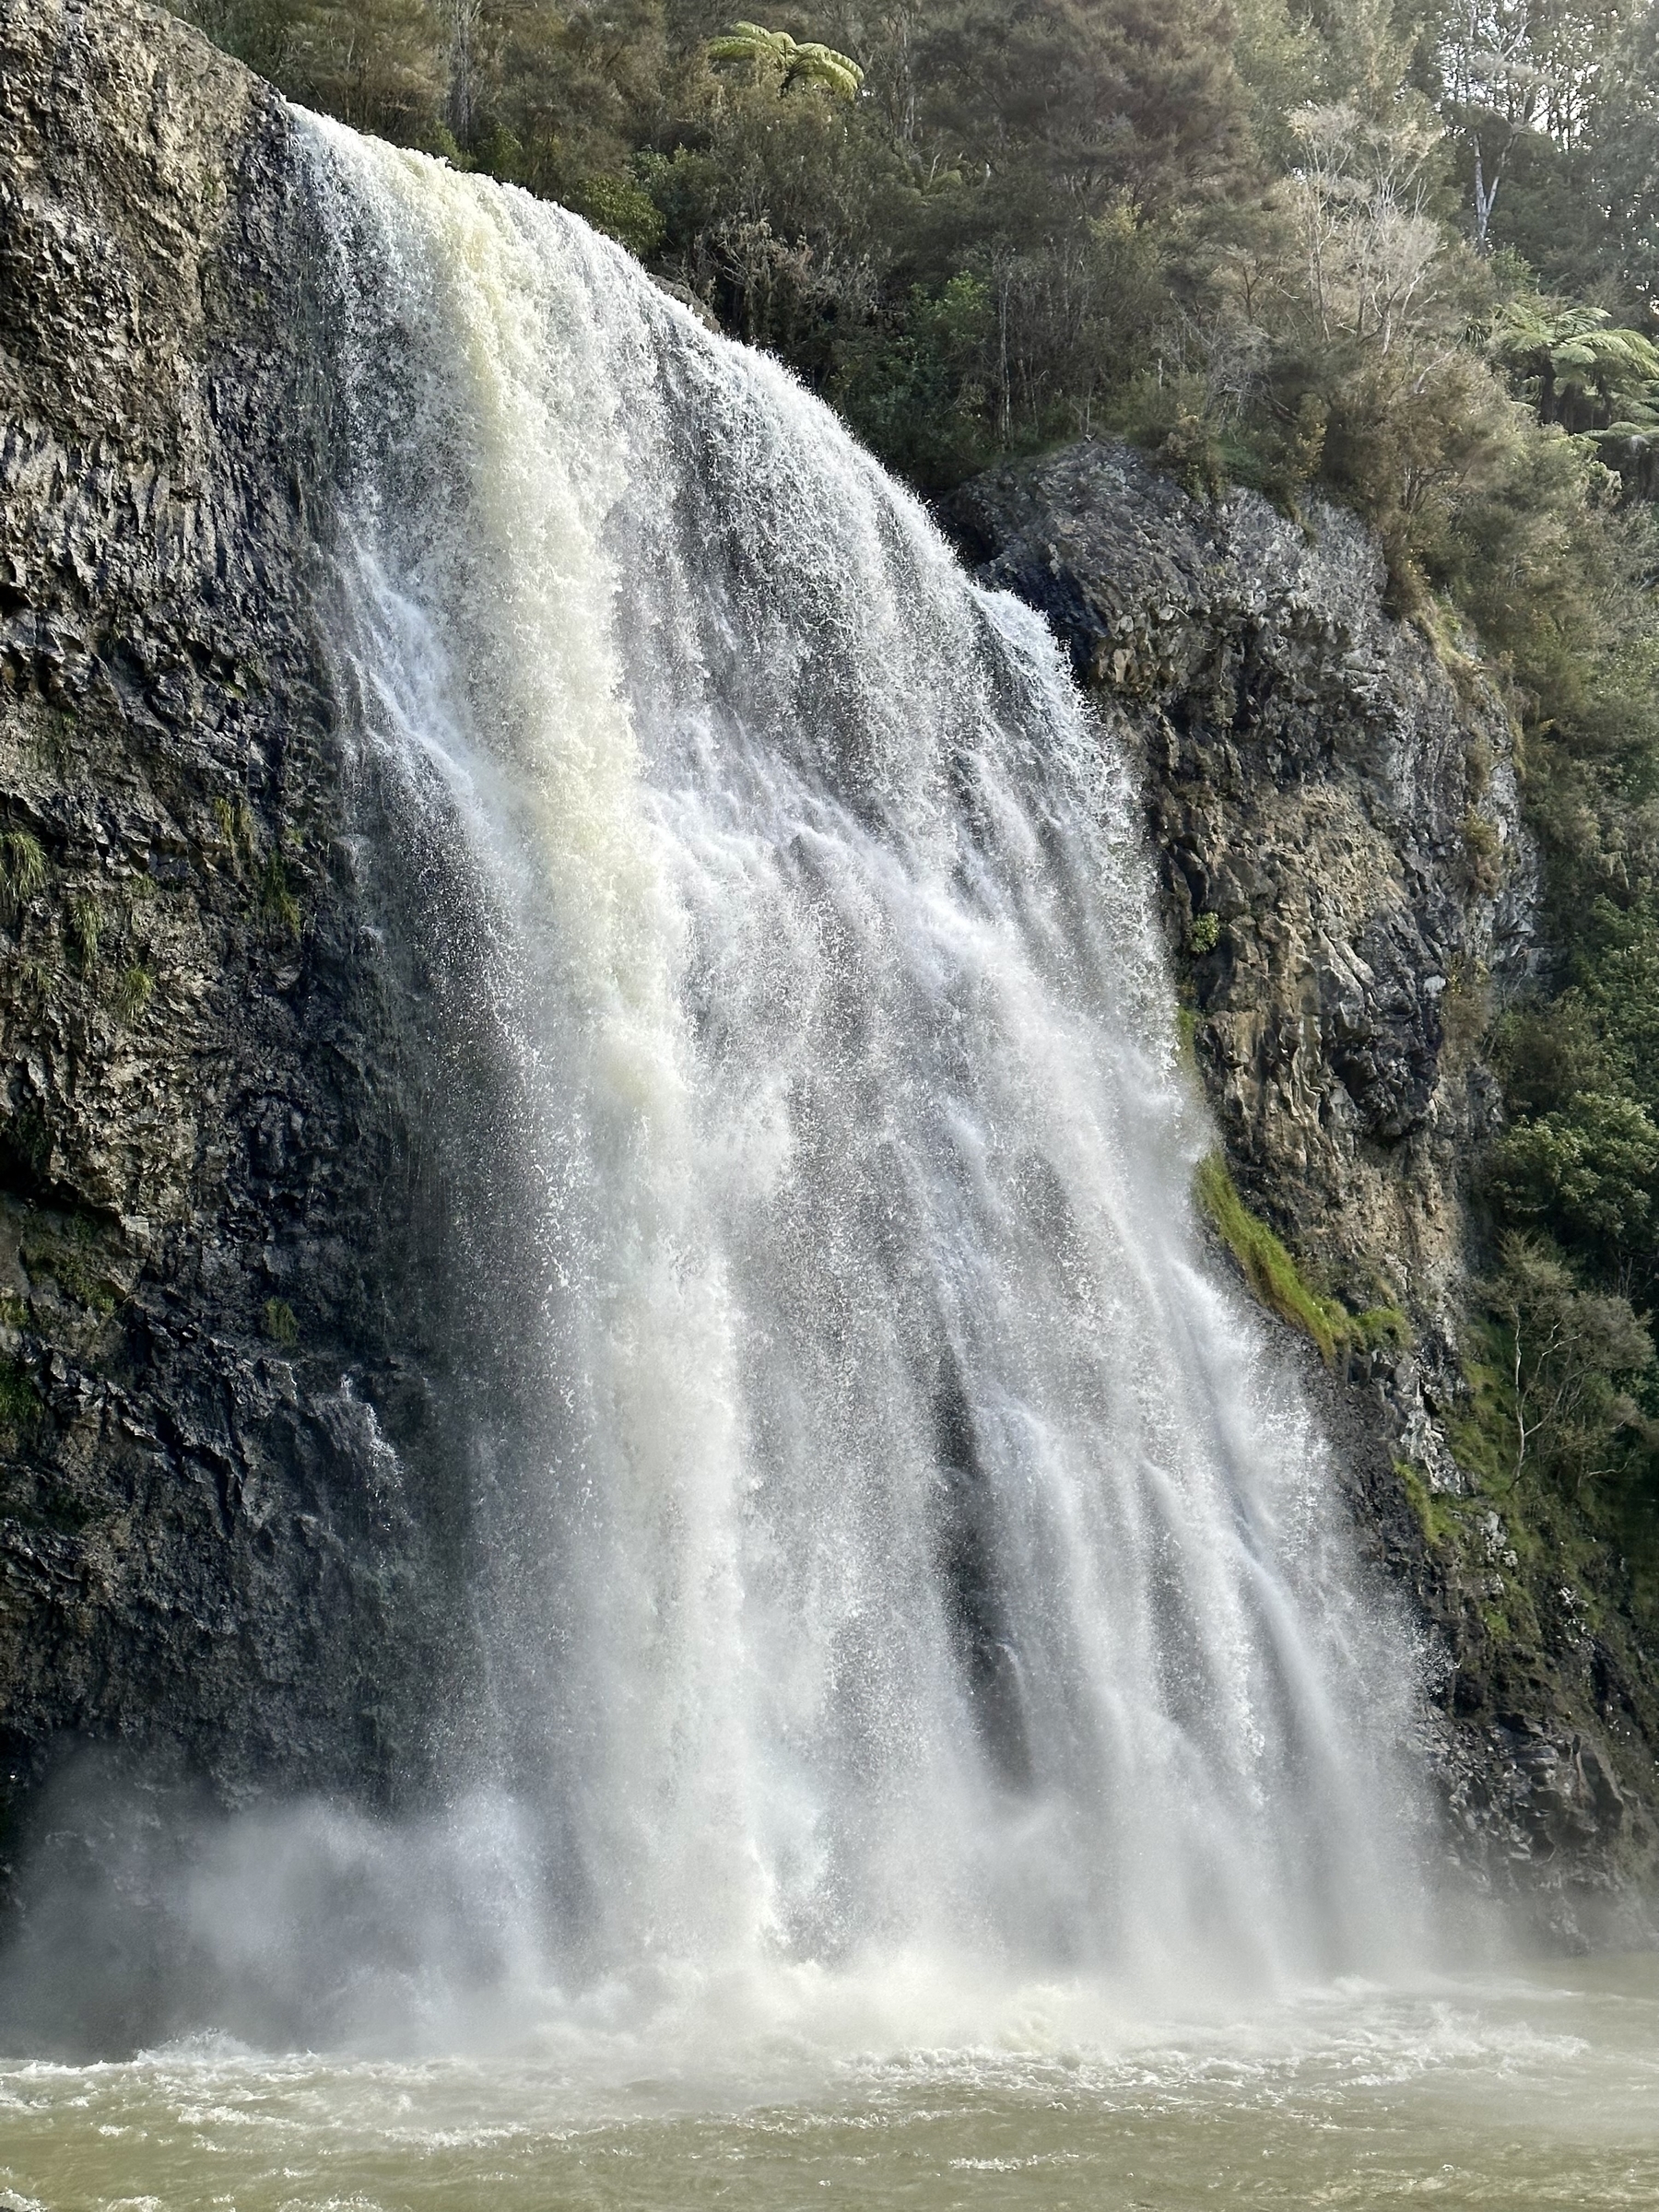 Hunua Falls, a waterfall in New Zealand